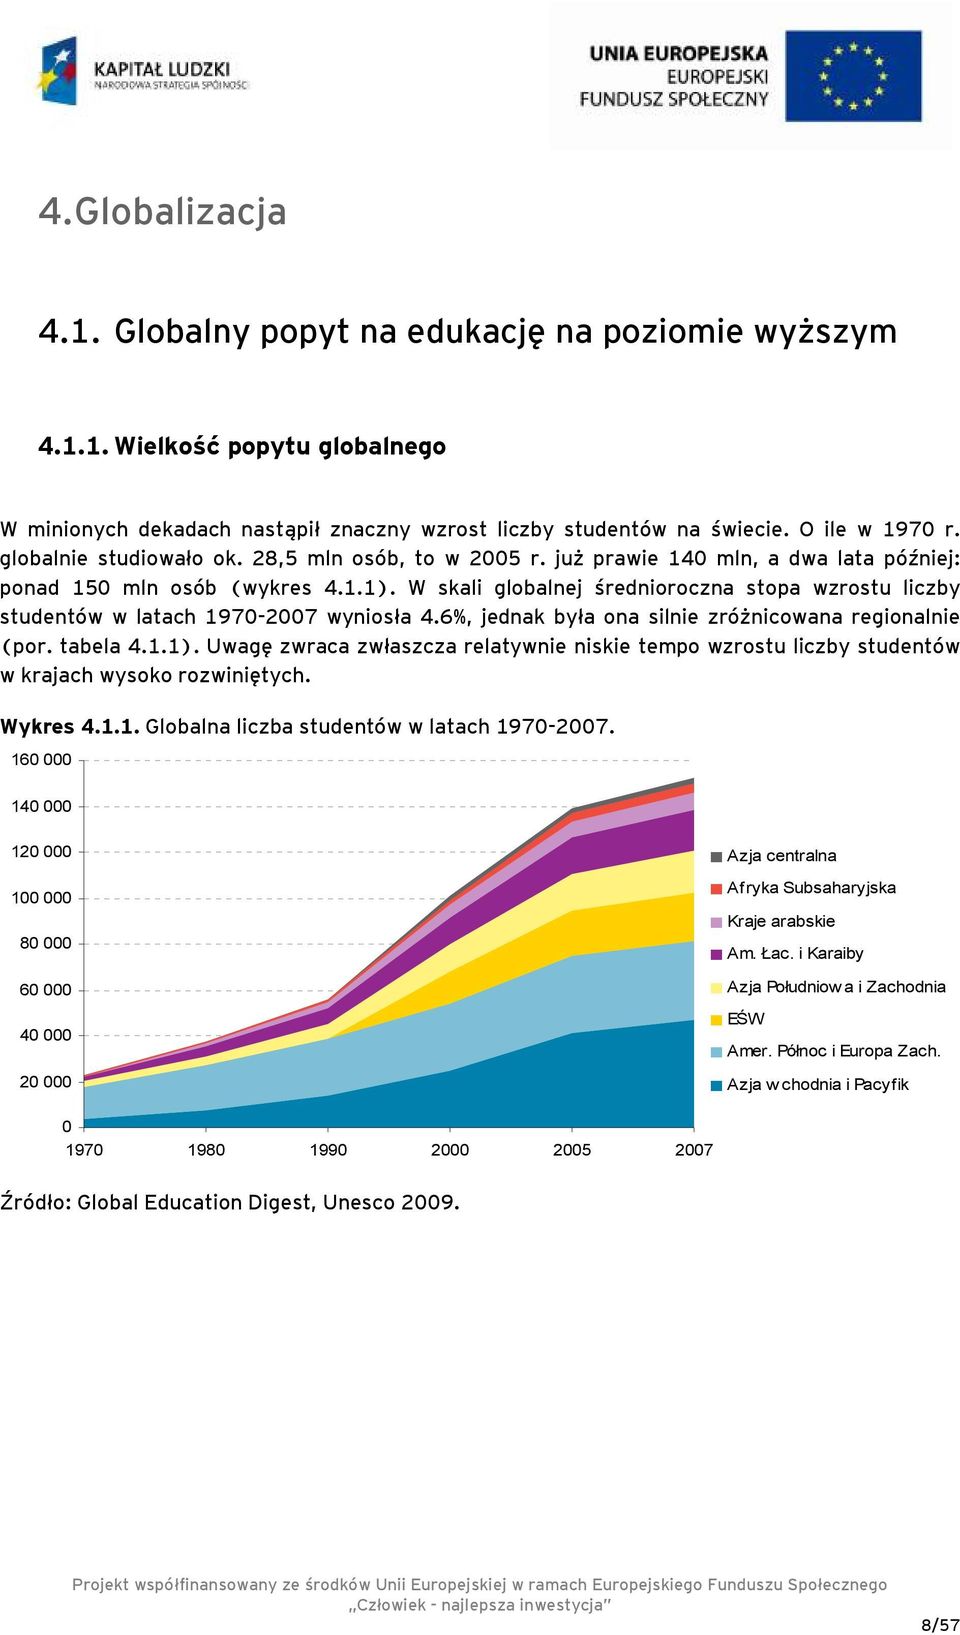 W skali globalnej średnioroczna stopa wzrostu liczby studentów w latach 1970-2007 wyniosła 4.6%, jednak była ona silnie zróżnicowana regionalnie (por. tabela 4.1.1).